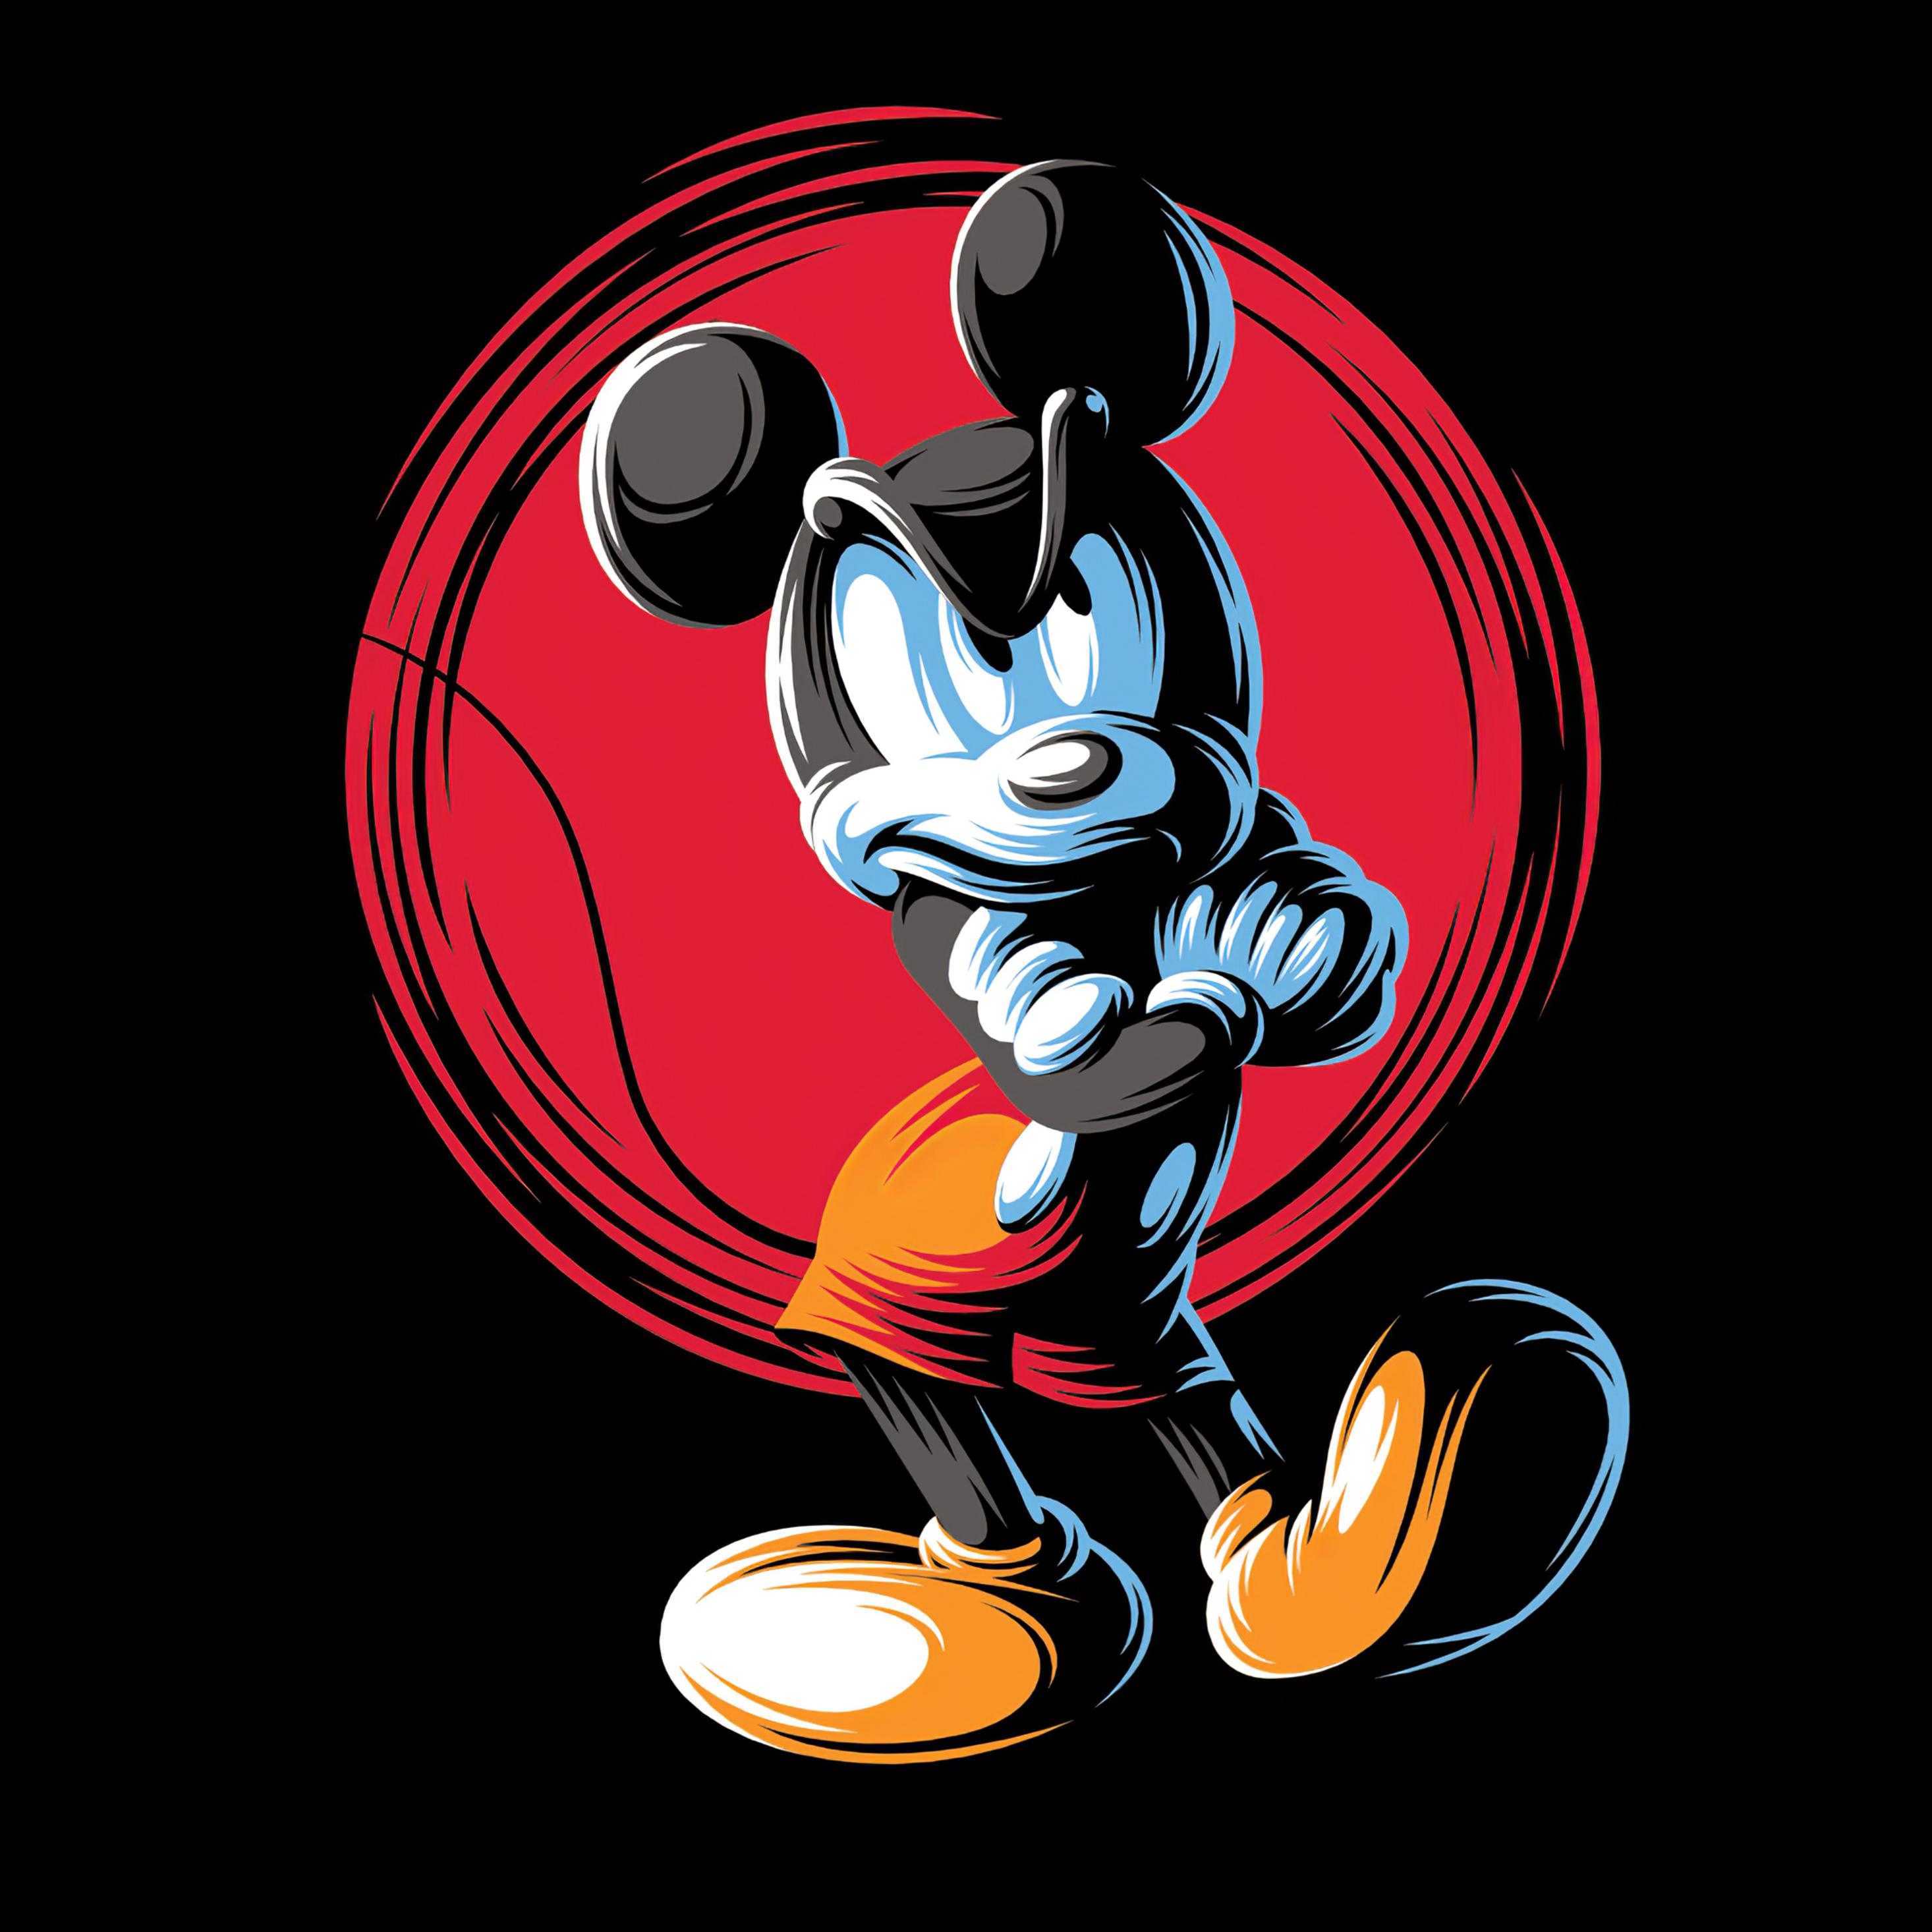 2932 x 2932 · jpeg - 2932x2932 Mickey Mouse Minimal Art 4k Ipad Pro Retina Display HD 4k ...